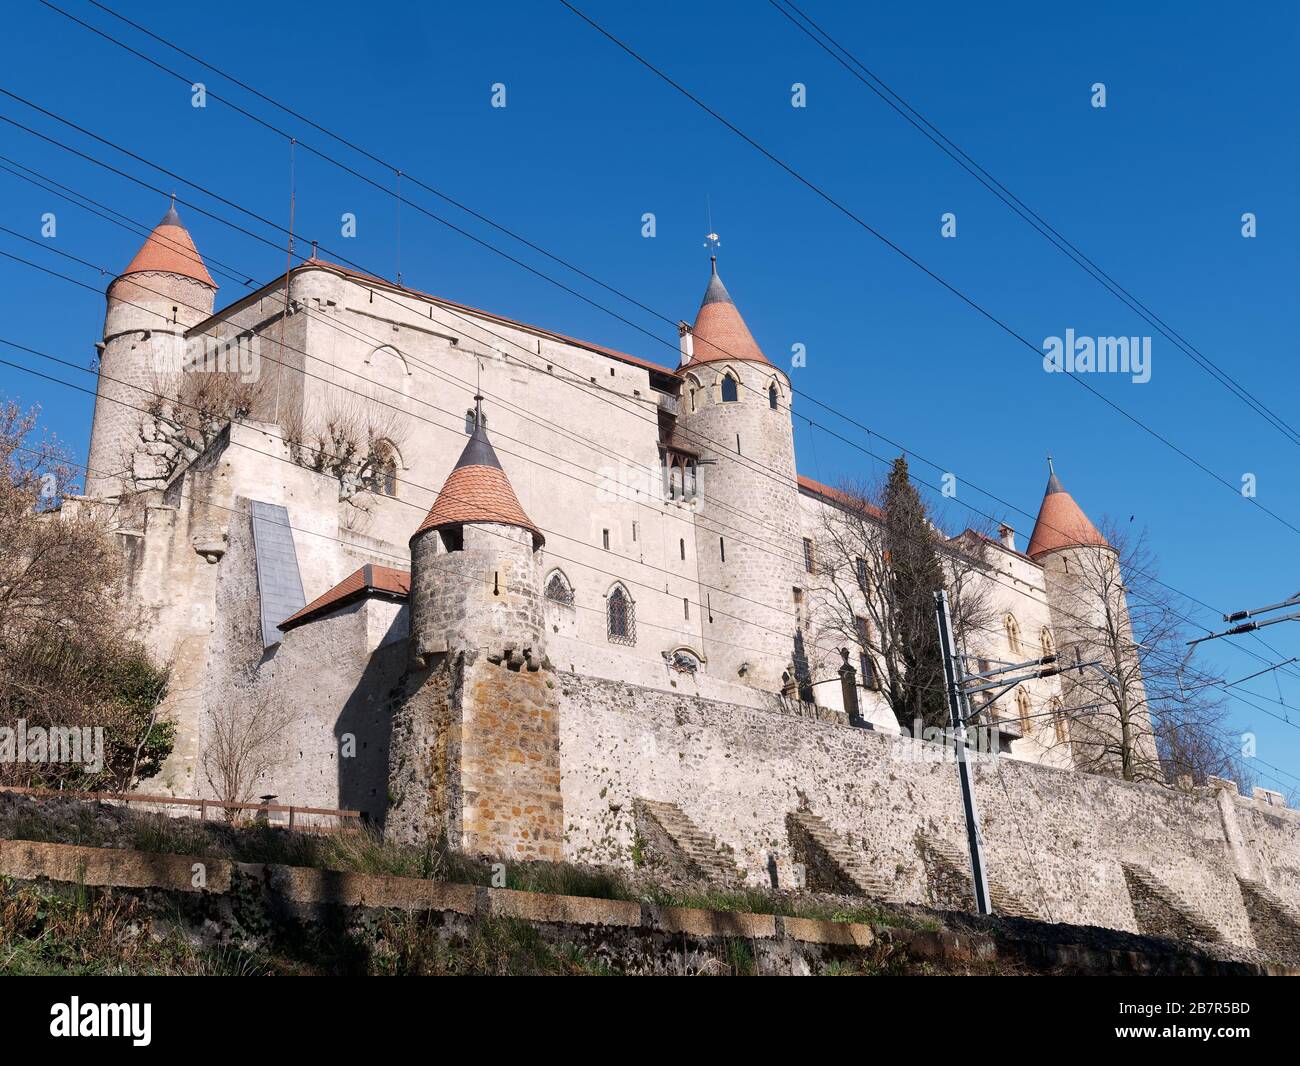 Rückblick auf die Burg Grandson, eine der besterhaltenen mittelalterlichen Festungen der Schweiz gegen den blauen Himmel. Stockfoto